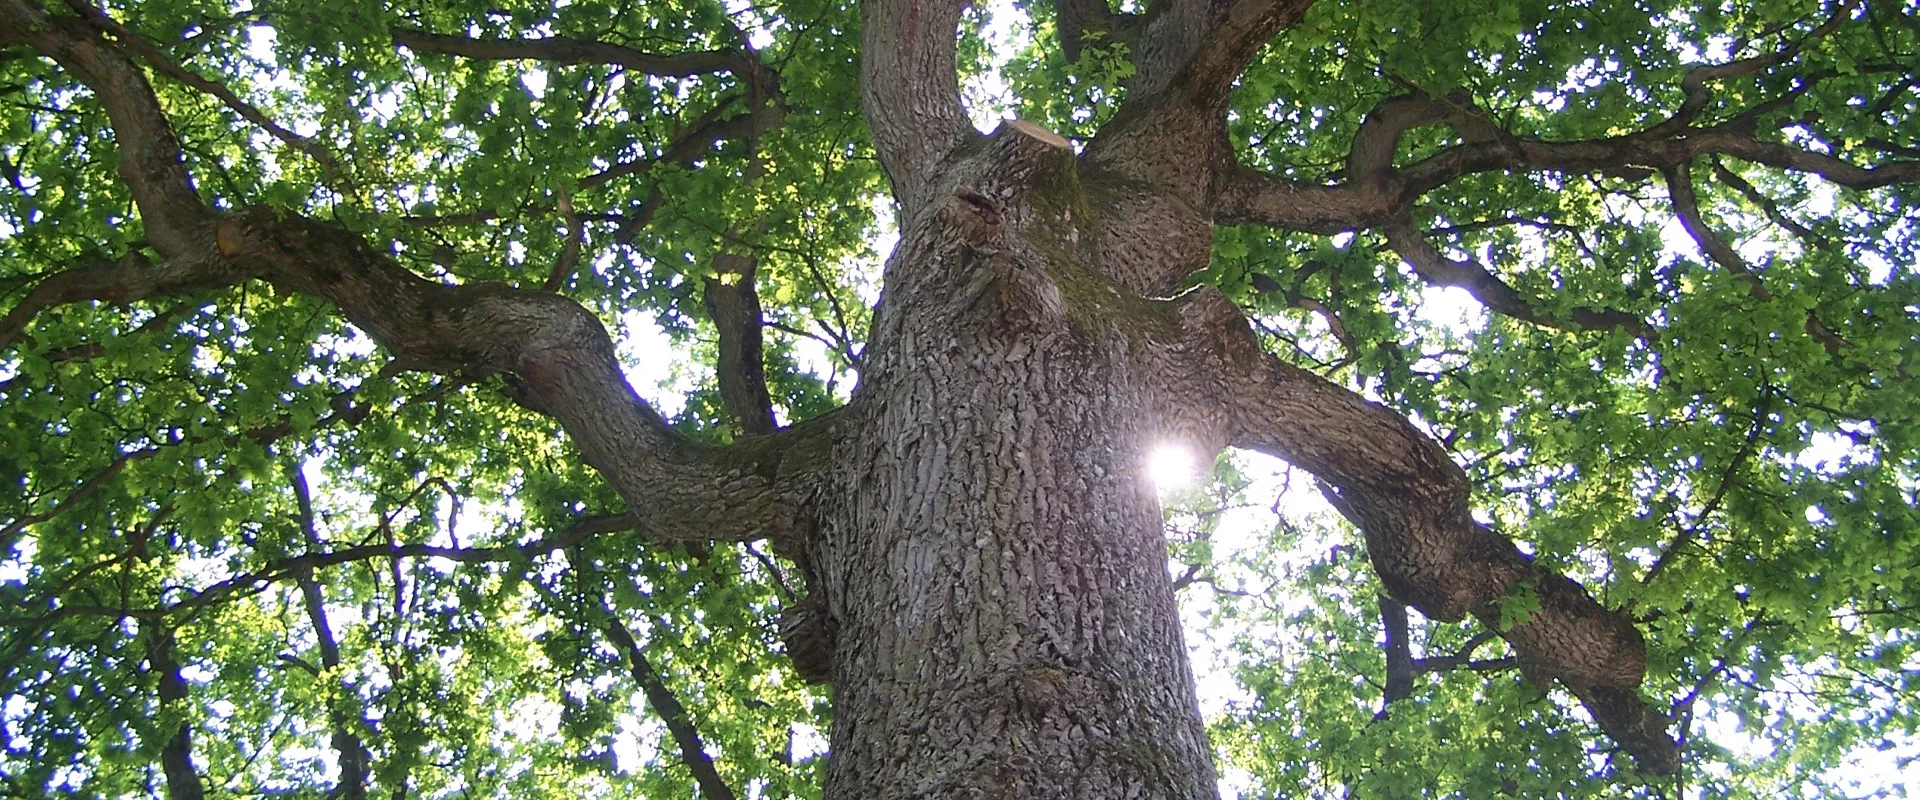 albero della vita